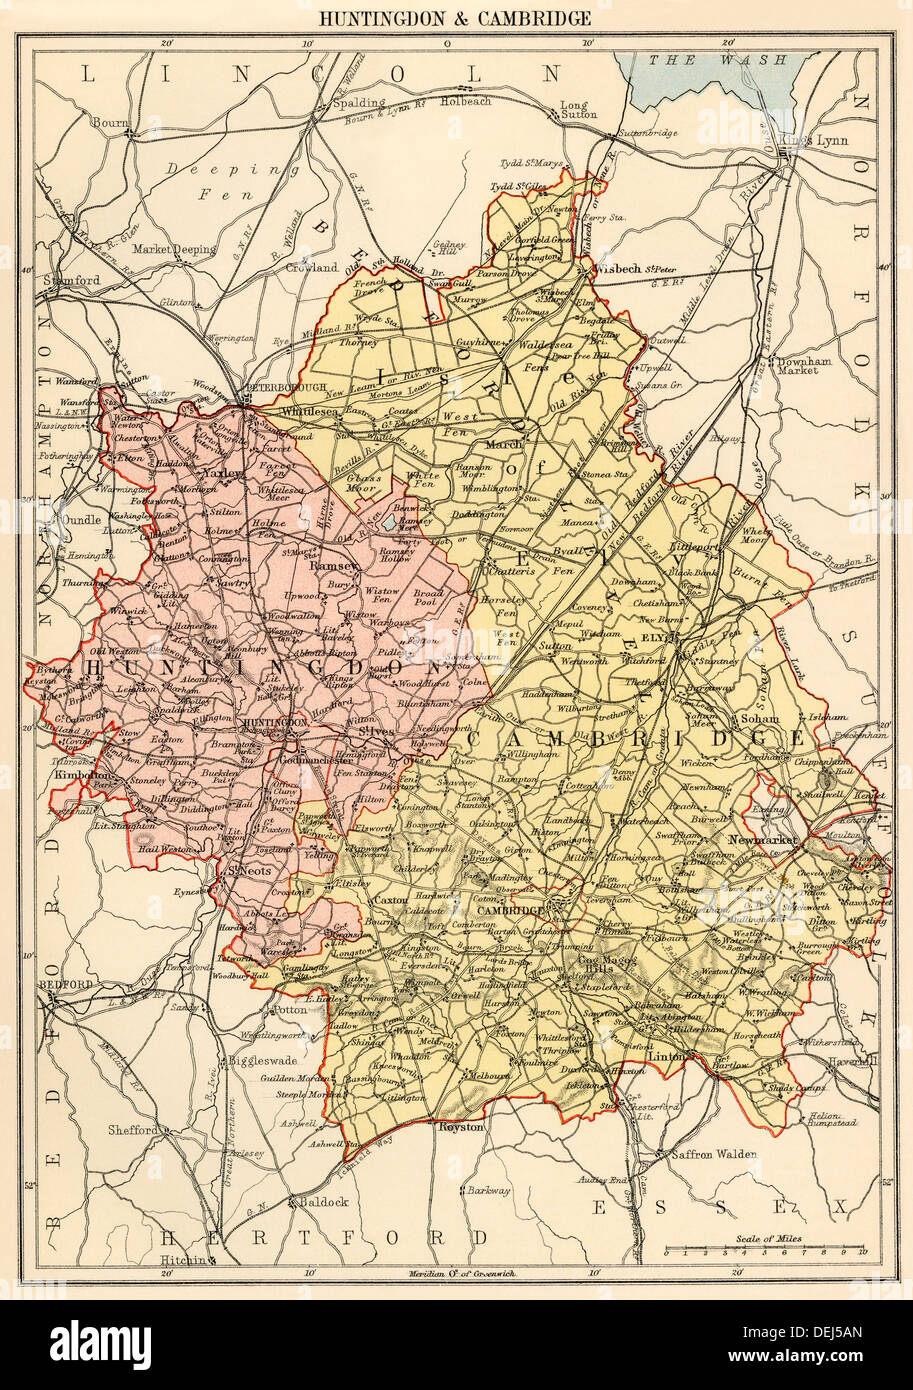 Plan de Huntingdonshire et Cambridgeshire, Angleterre, 1870. Lithographie couleur Banque D'Images